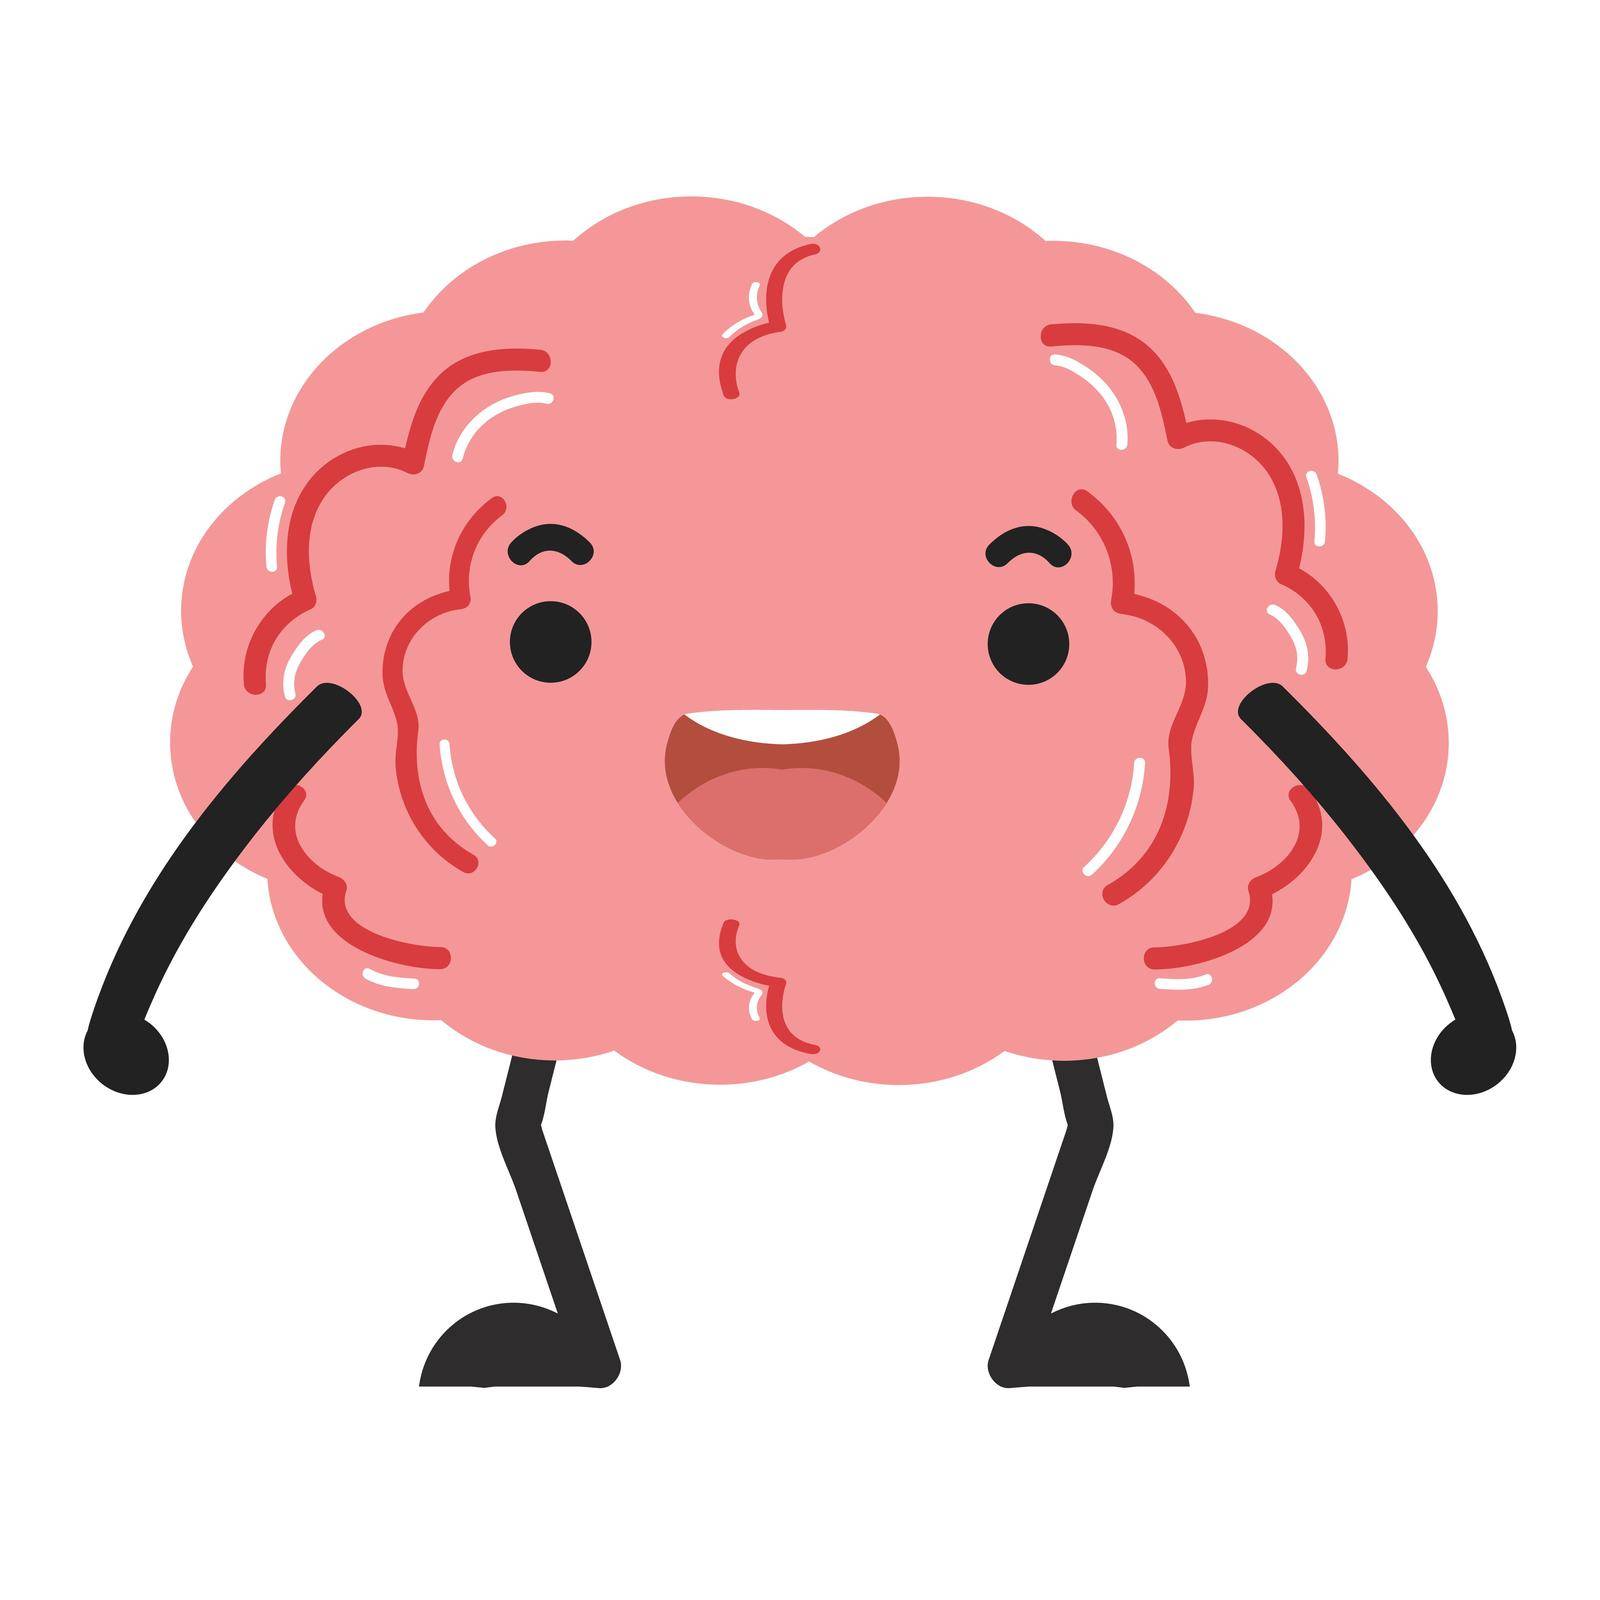 brain cartoon character happy design vector